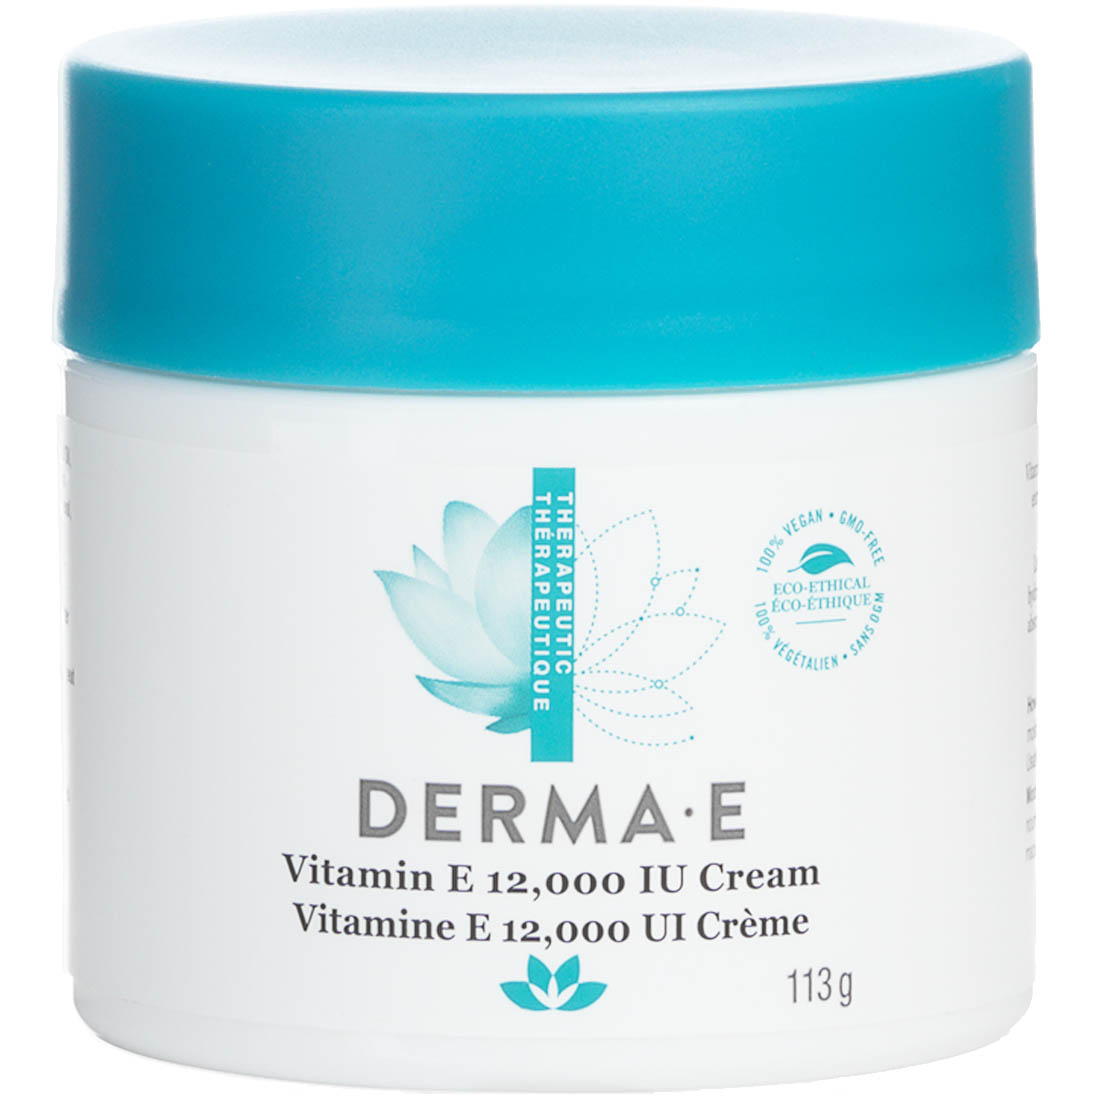 Derma E Vitamin E 12,000IU Cream, Severely Dry Skin Creme, 113g